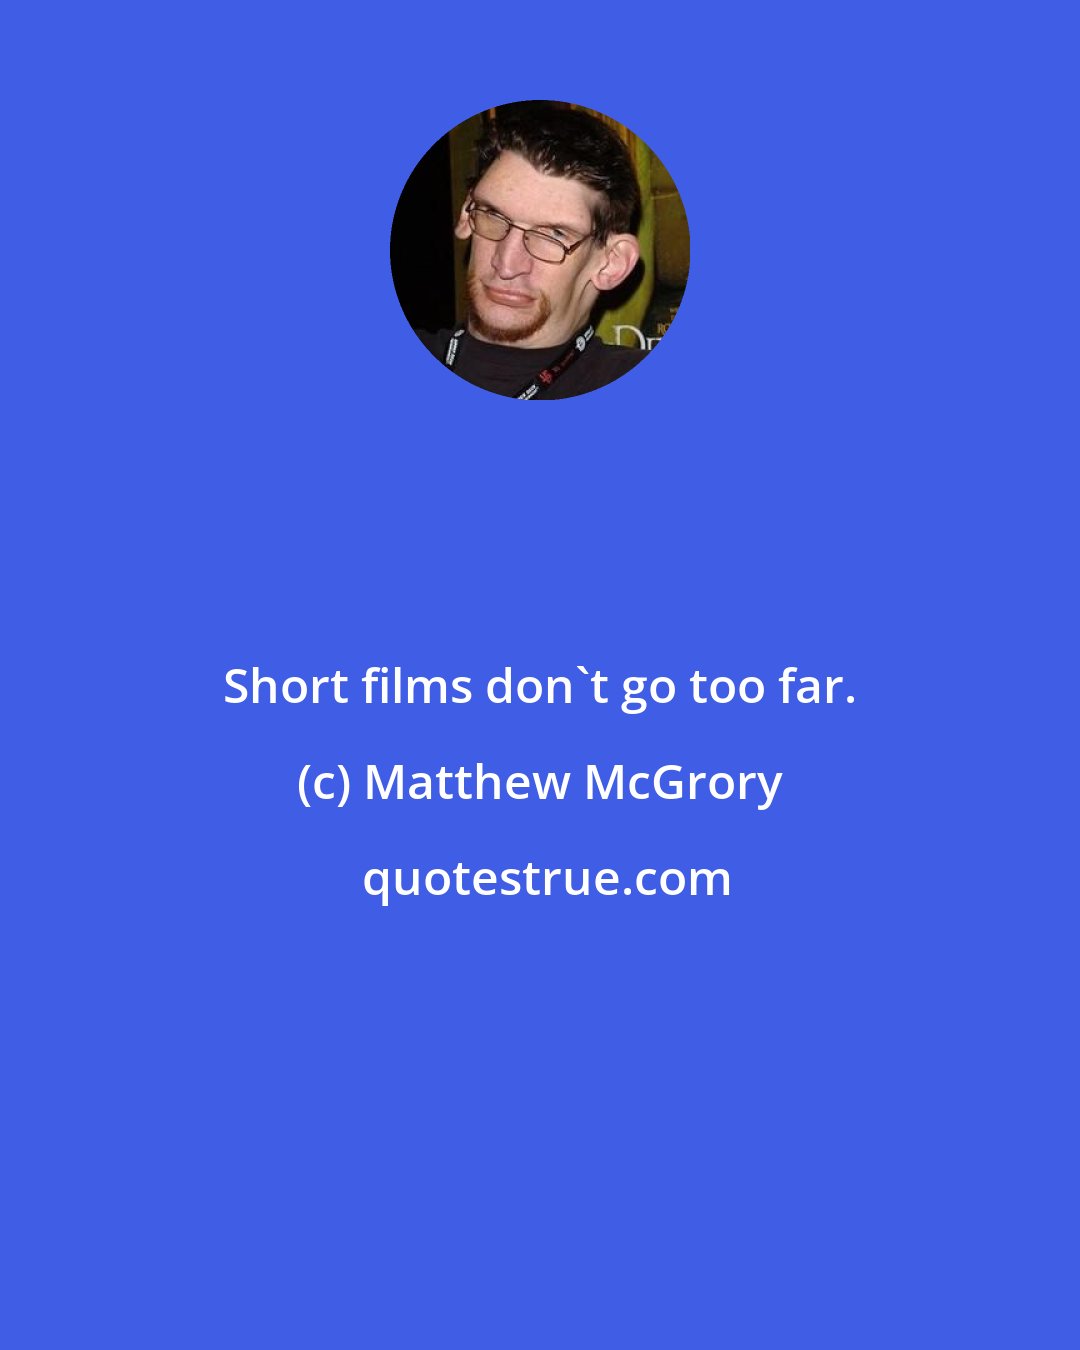 Matthew McGrory: Short films don't go too far.